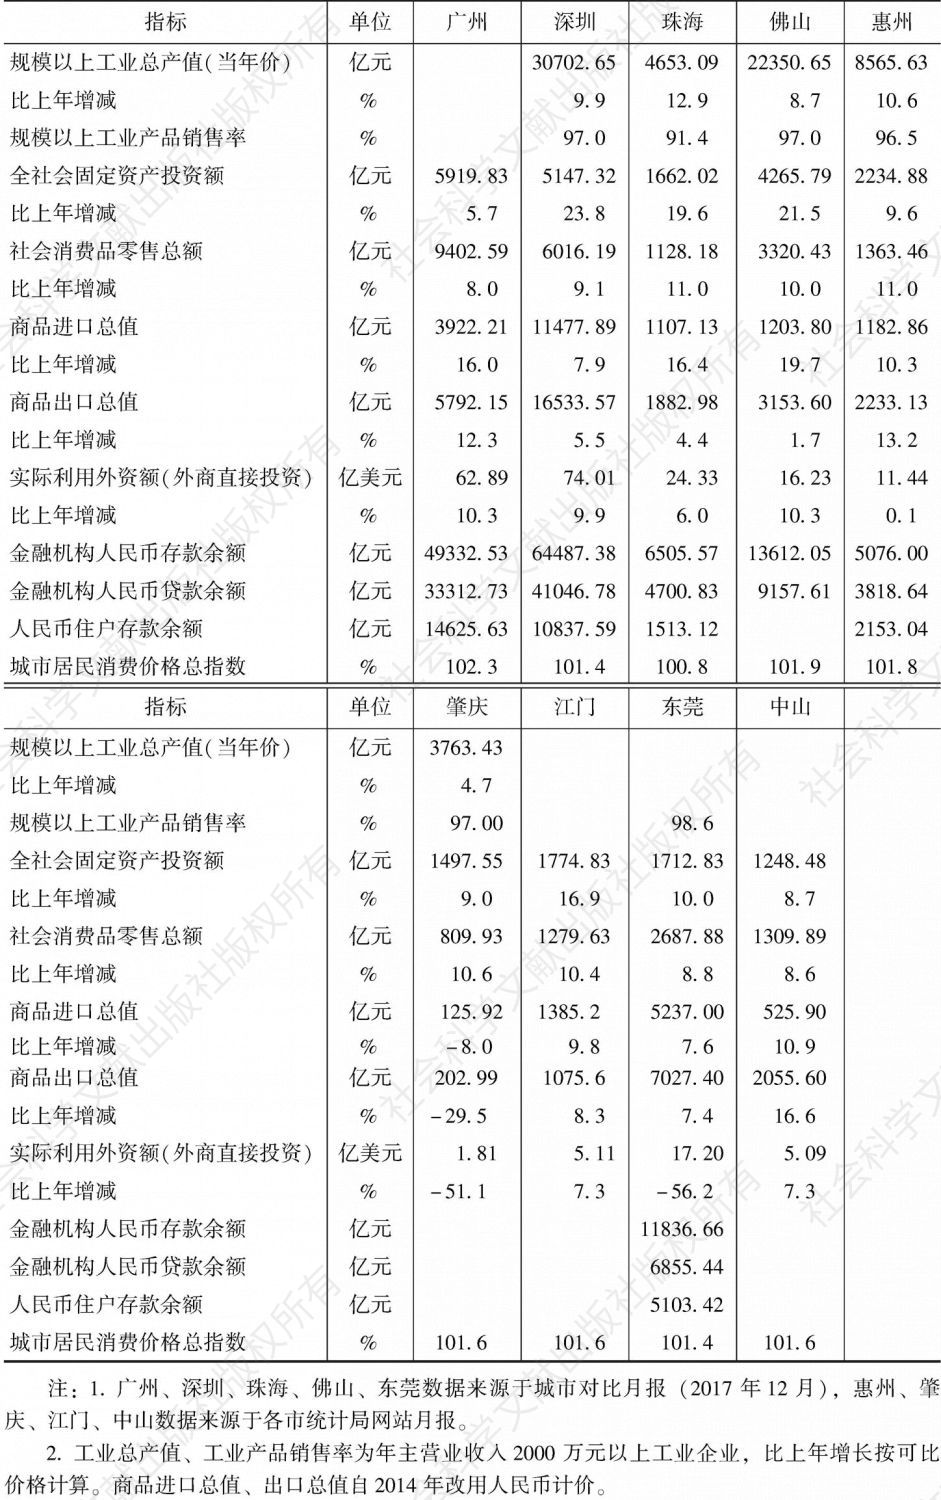 2017年珠江三角洲主要城市主要经济指标对比